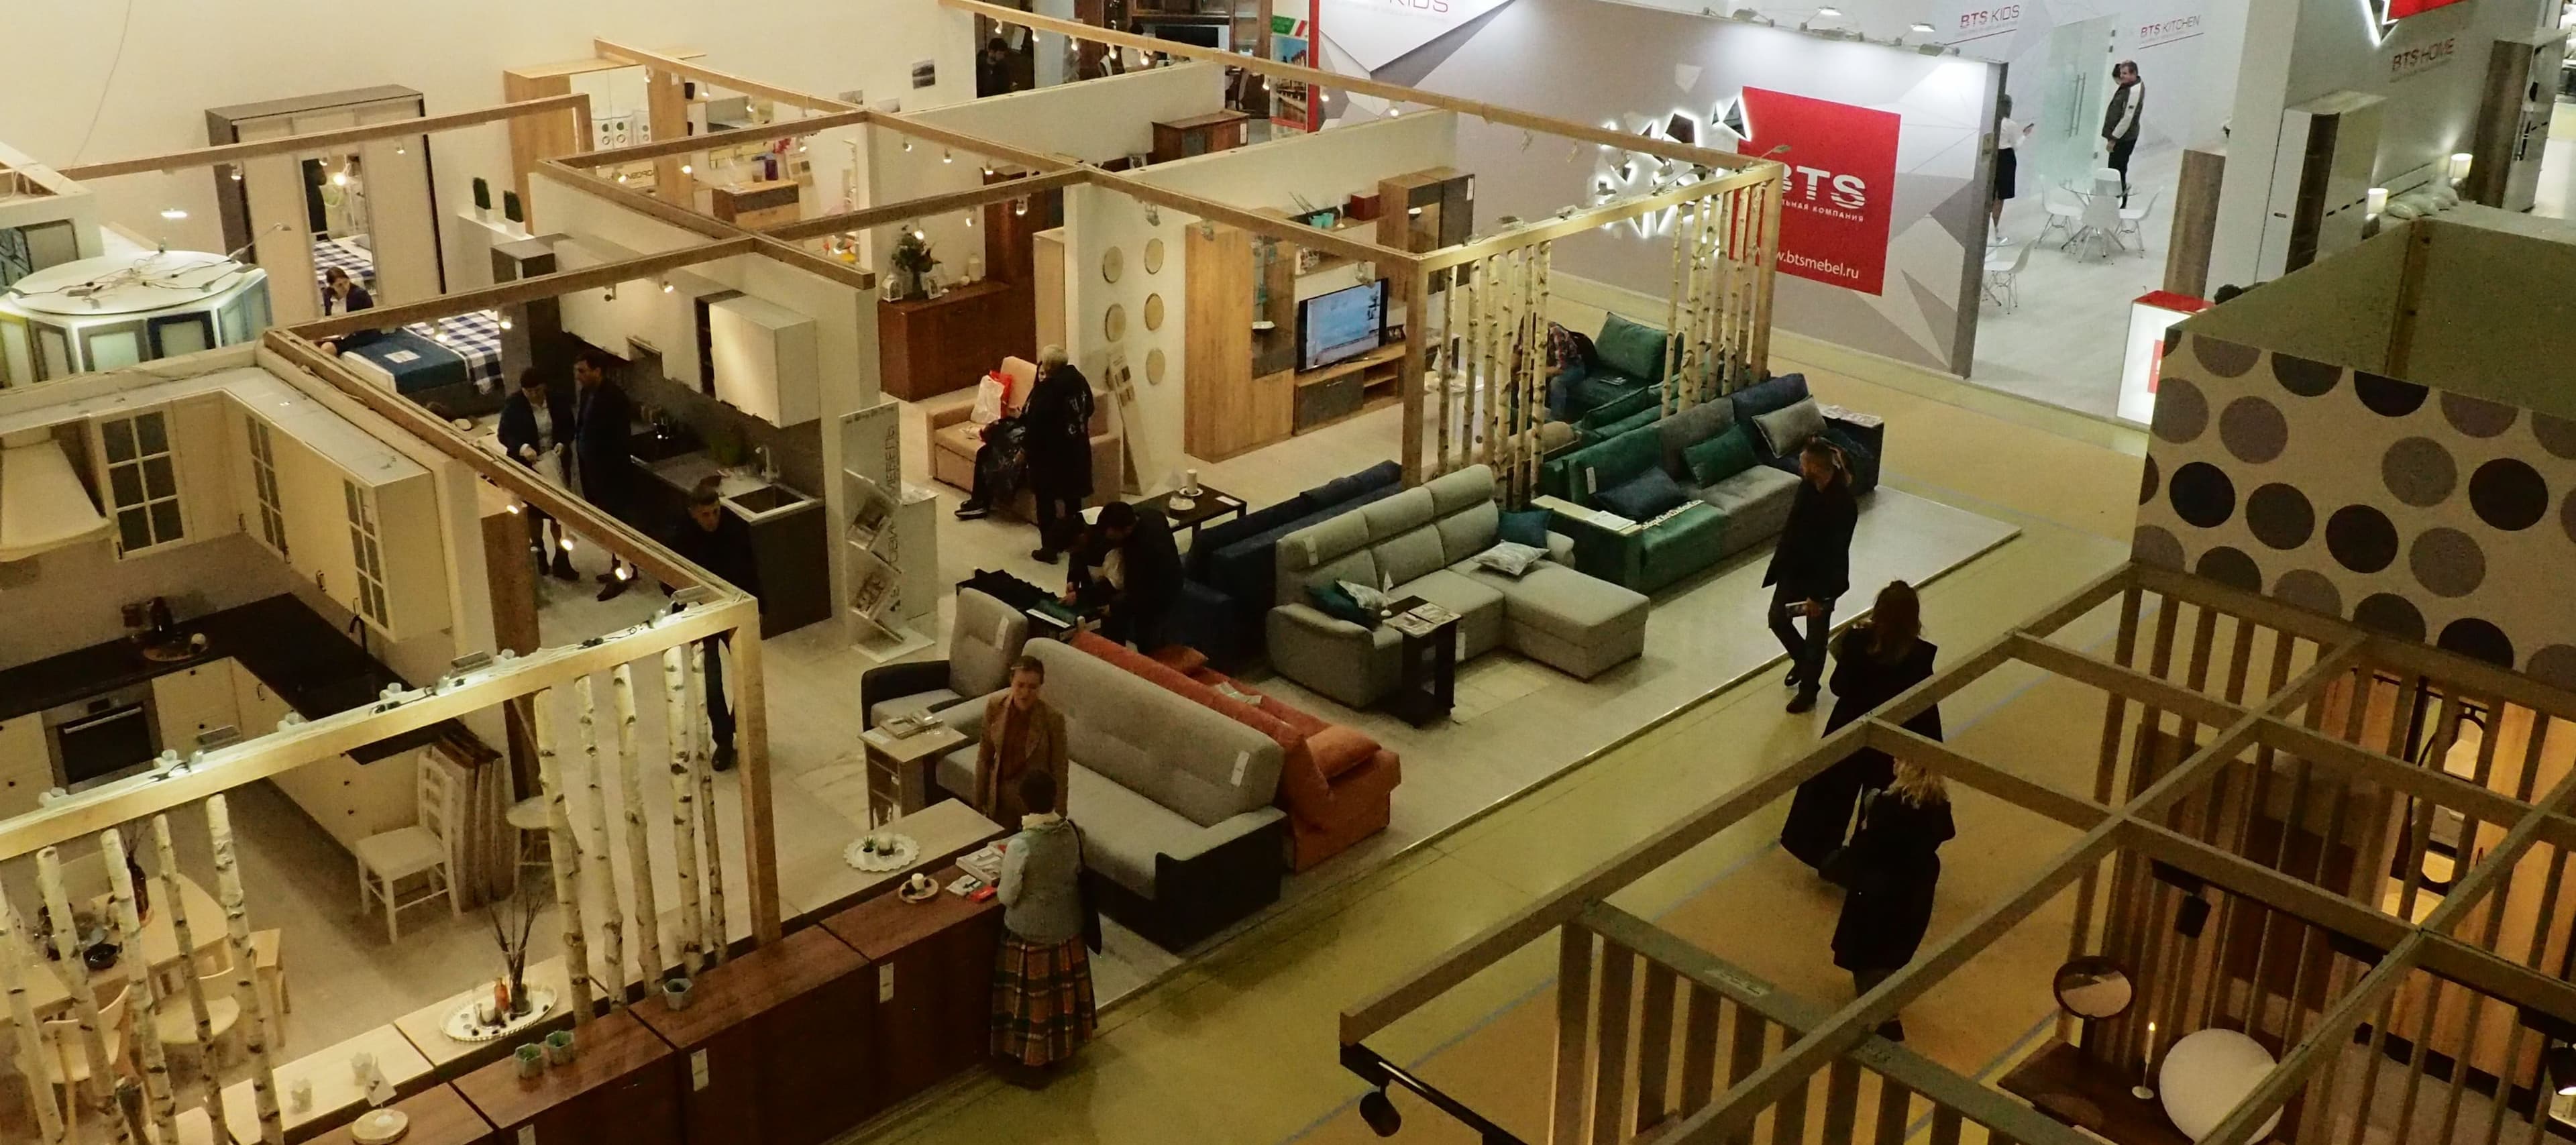 Фото новости: "Производство и продажи мебели в России ускорили падение"